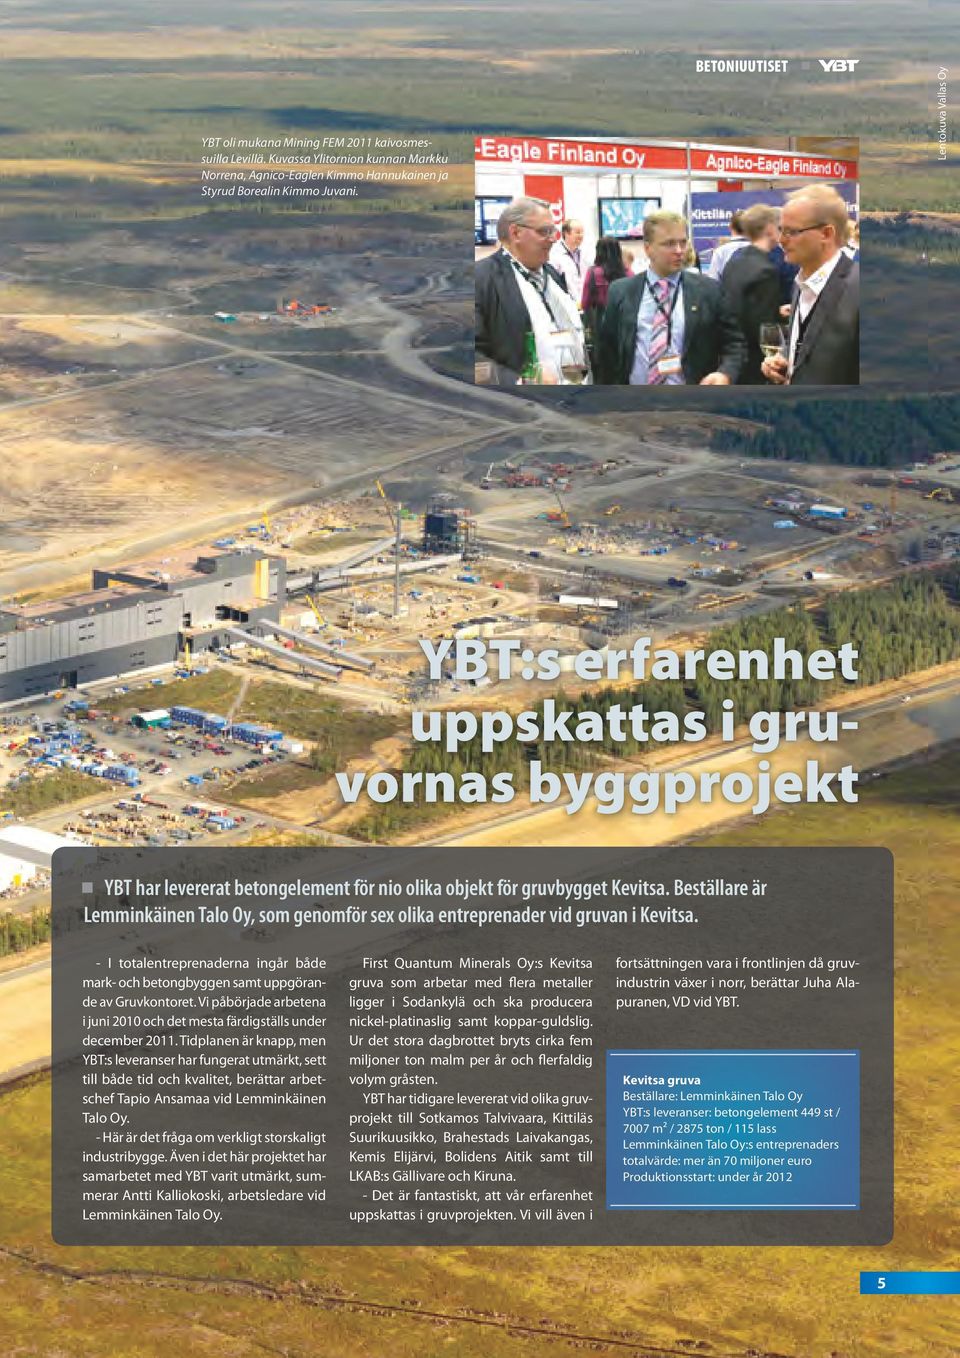 Beställare är Lemminkäinen Talo Oy, som genomför sex olika entreprenader vid gruvan i Kevitsa. - I totalentreprenaderna ingår både mark- och betongbyggen samt uppgörande av Gruvkontoret.